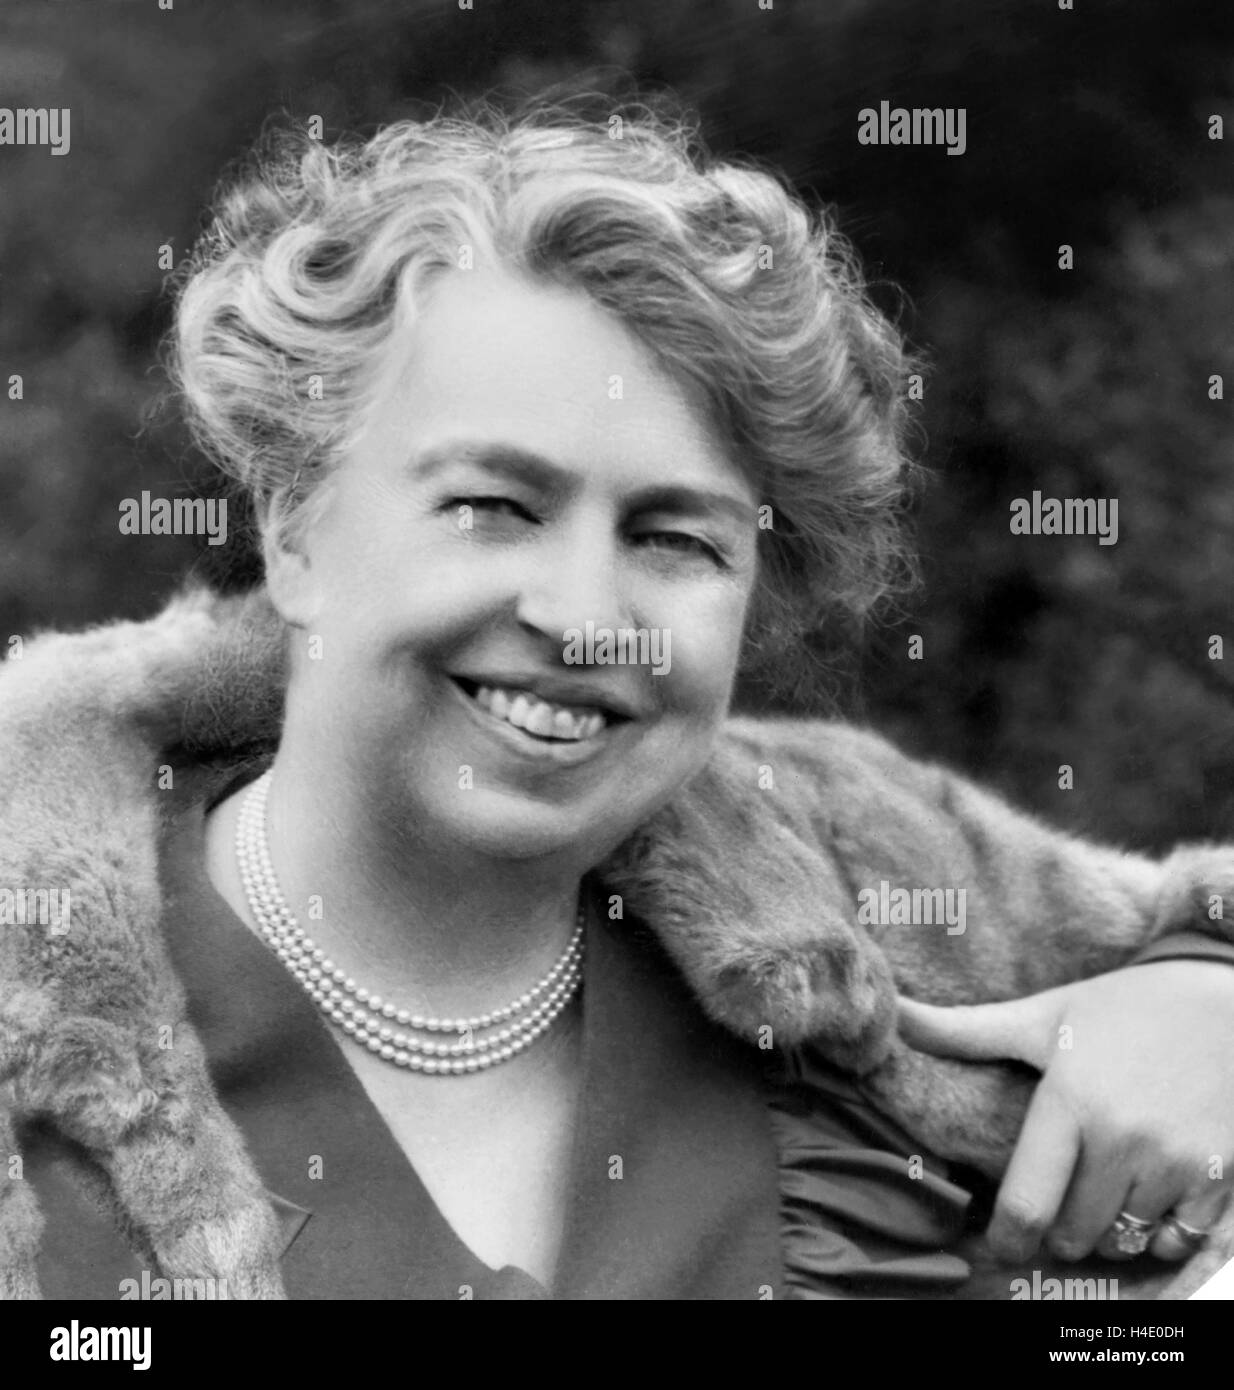 Eleanor Roosevelt (1884-1962), Ehefrau des Franklin D Roosevelt, der 32. Präsident der USA. Foto von Harris & Ewing, c.1932 Stockfoto